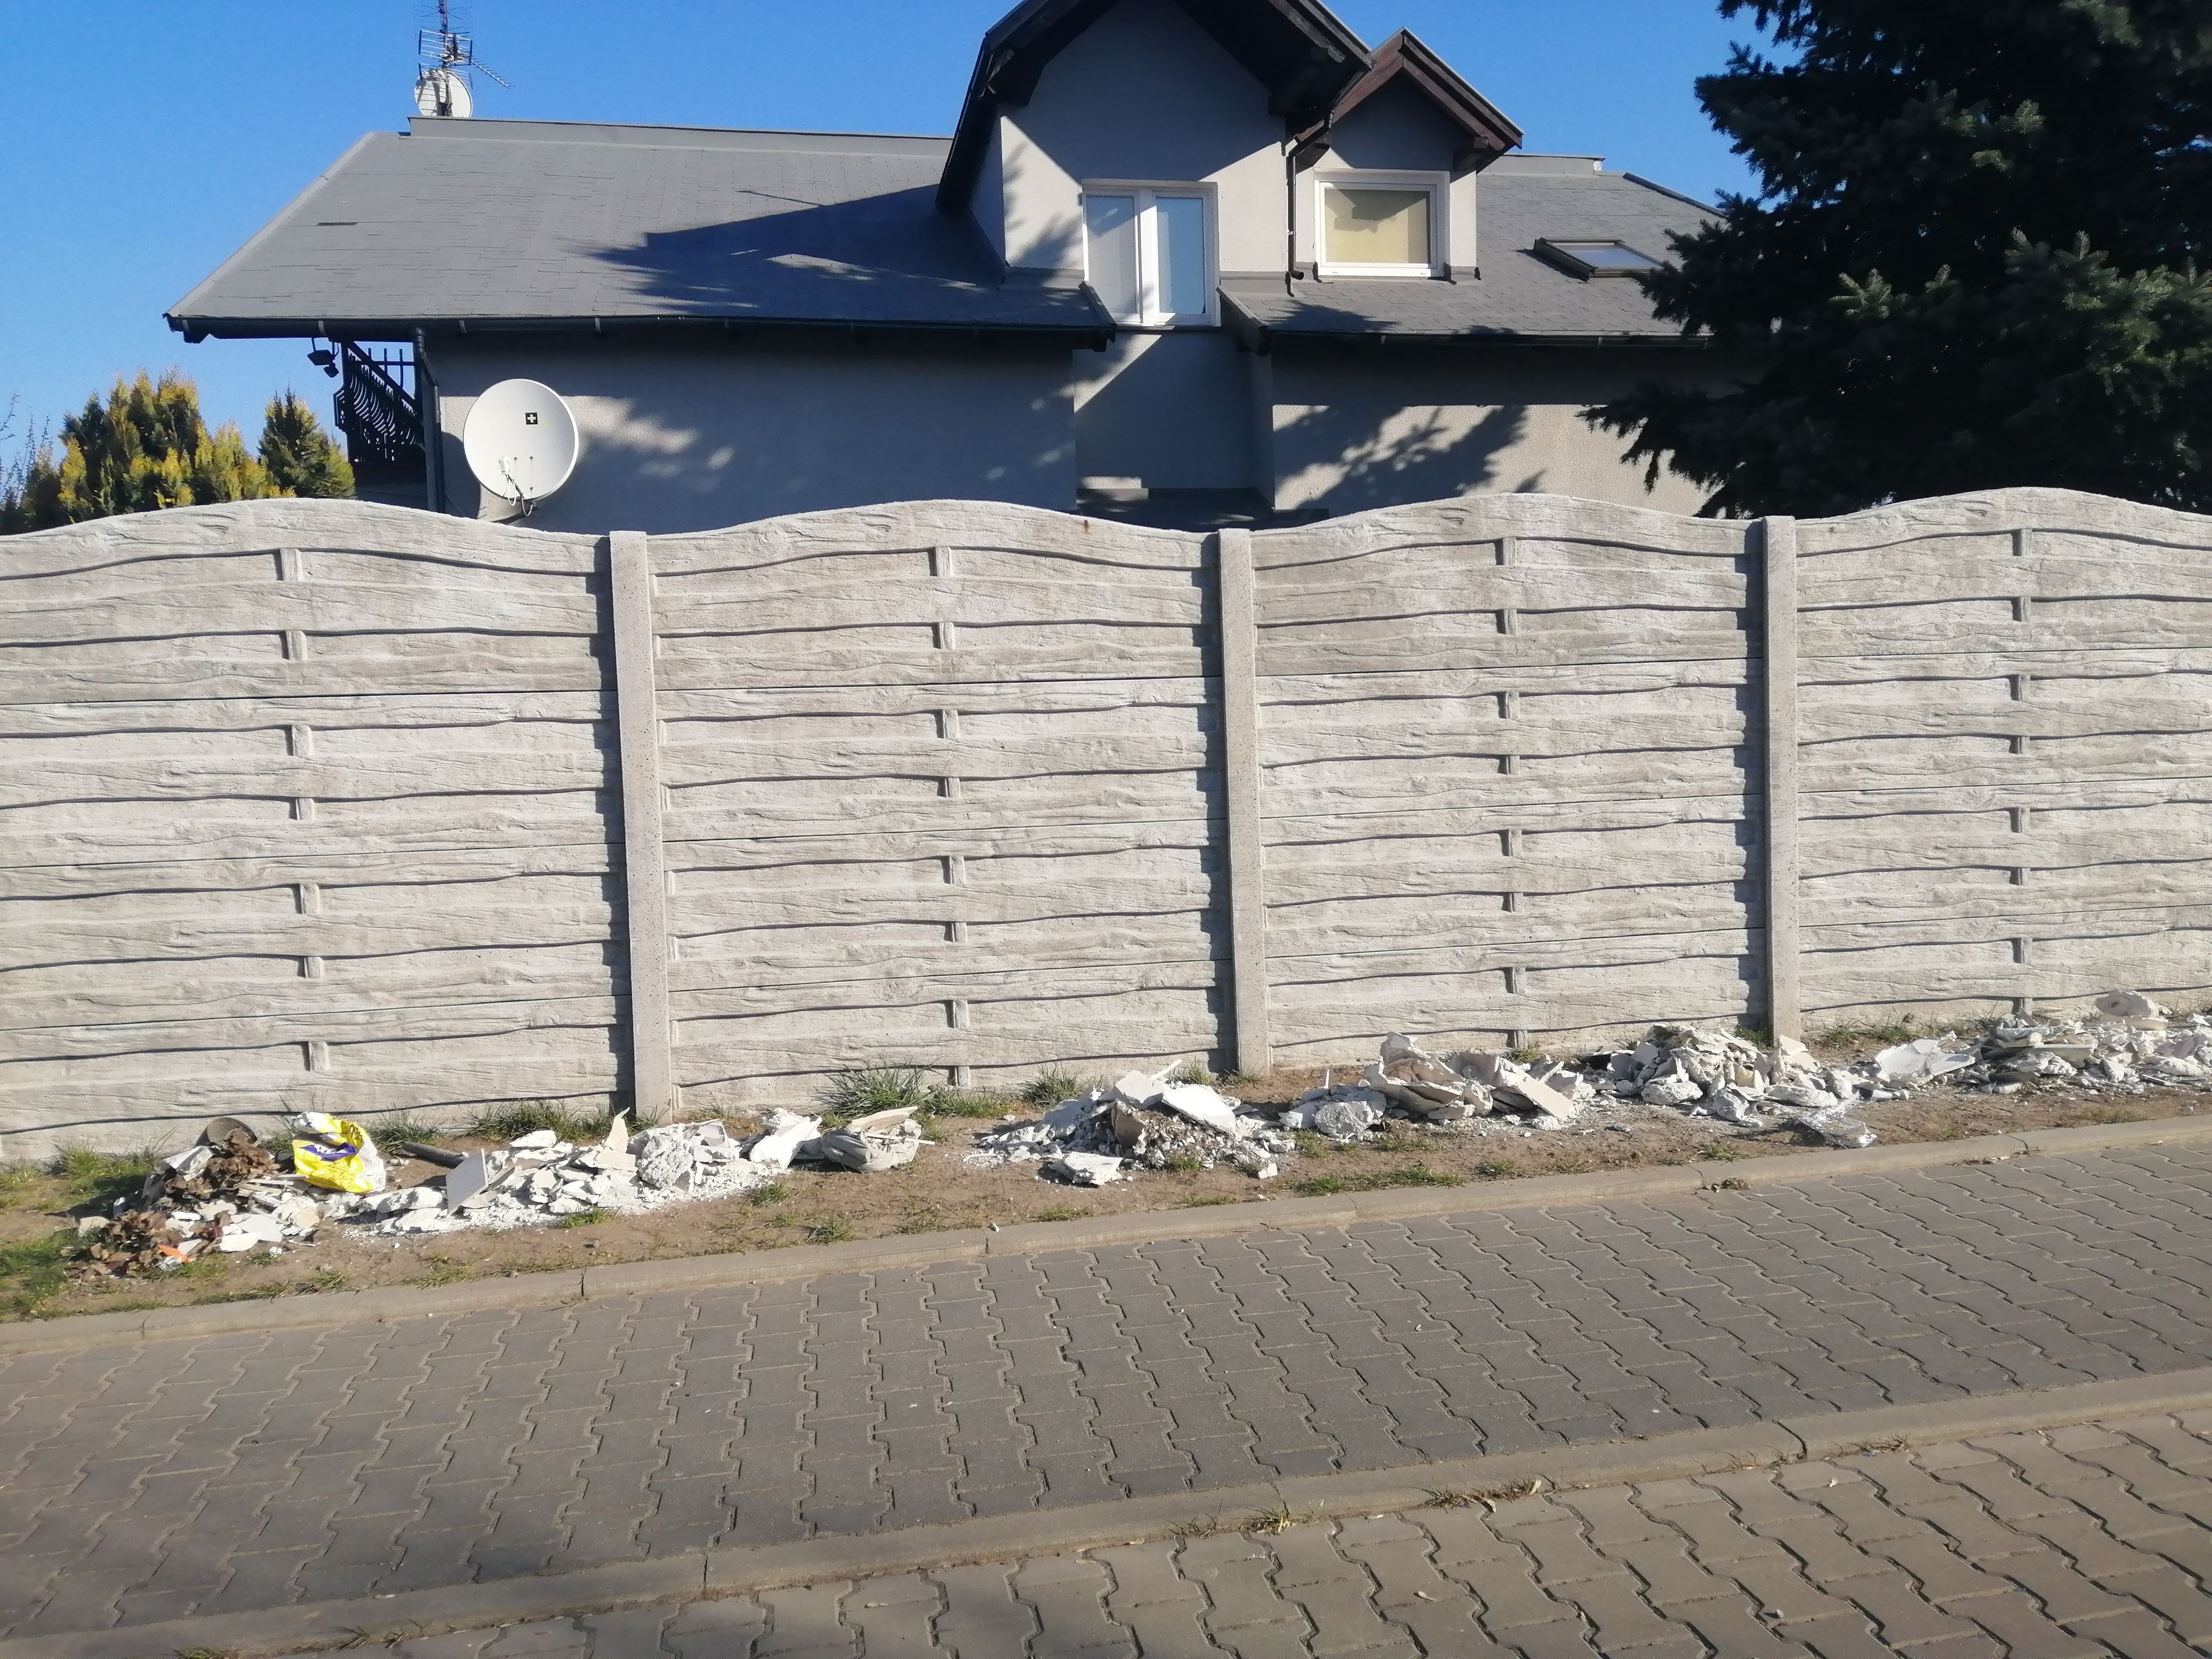 Zdjęcie przedstawia część ulicy oraz betonowy płot przy którym leżą odpady budowlane